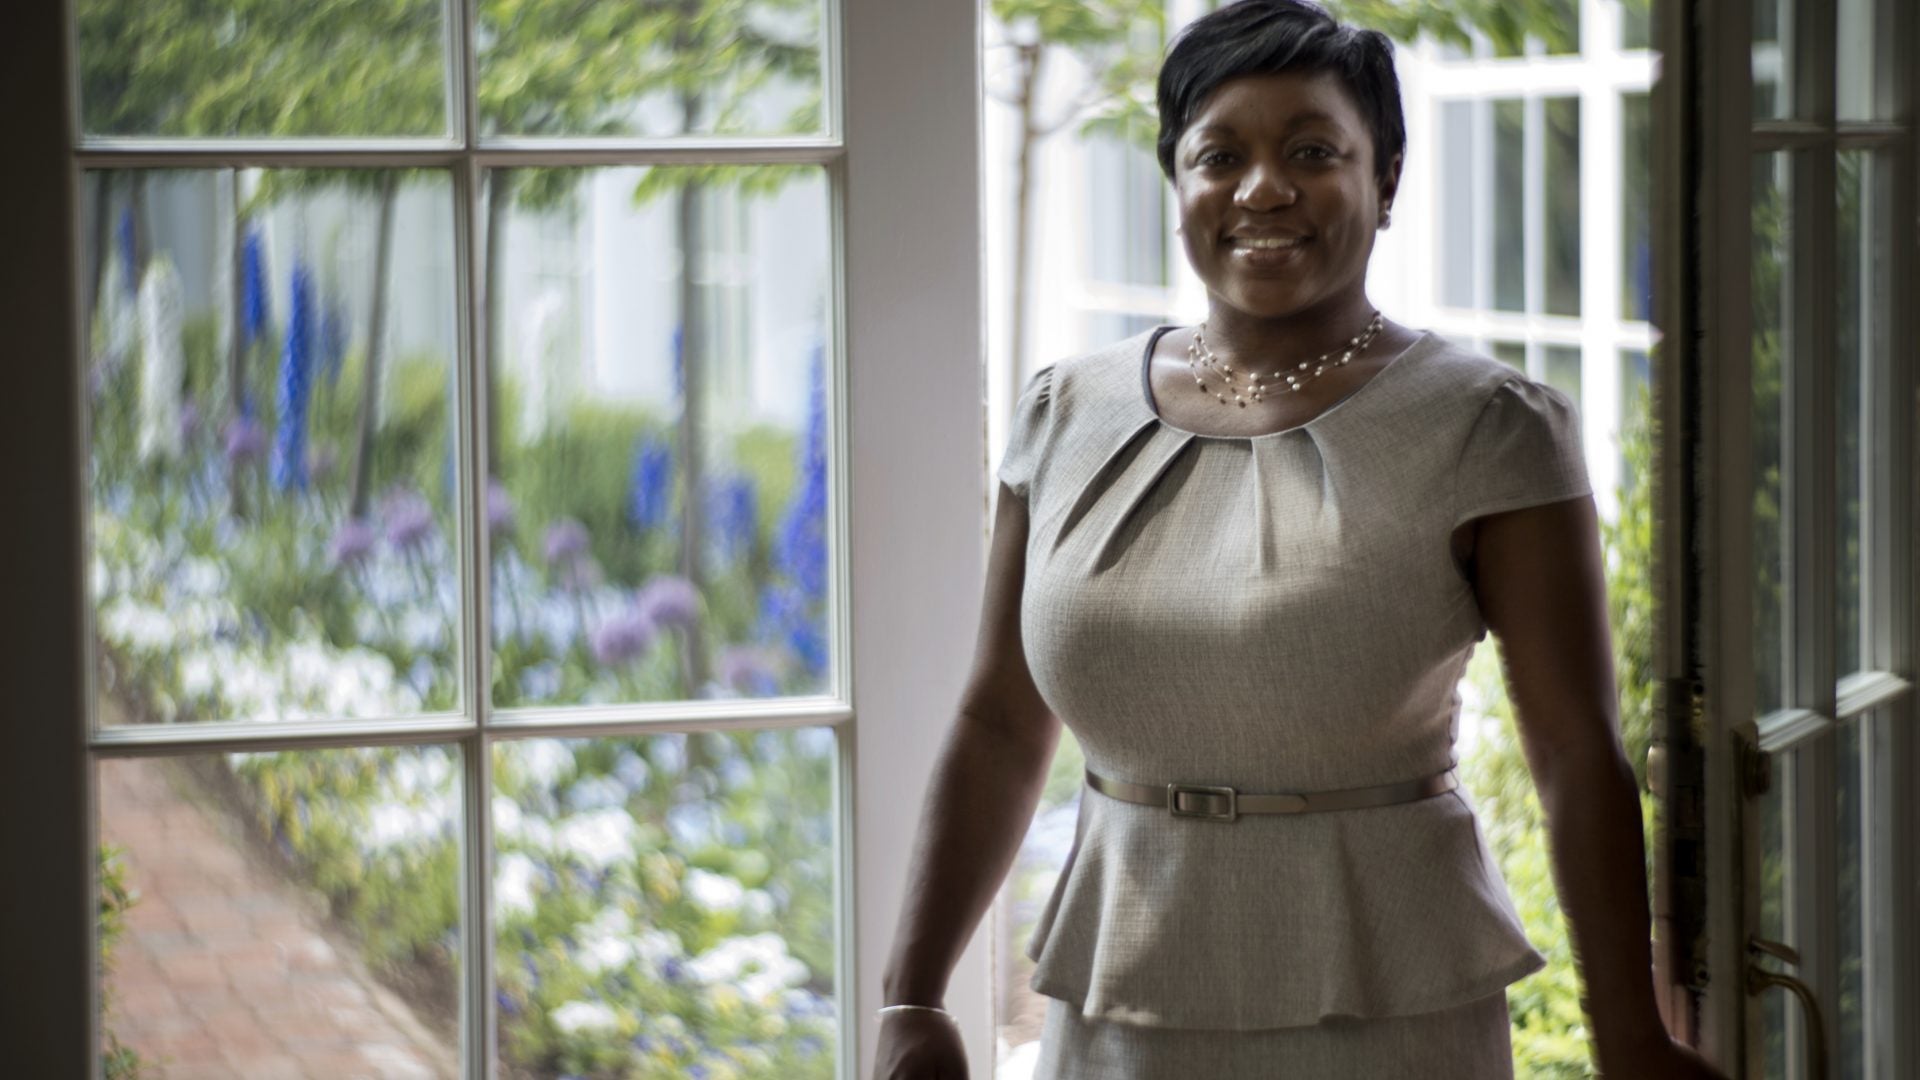 Obama White House Alumni Uplift Students with 'Black Girl 44' Scholarship 